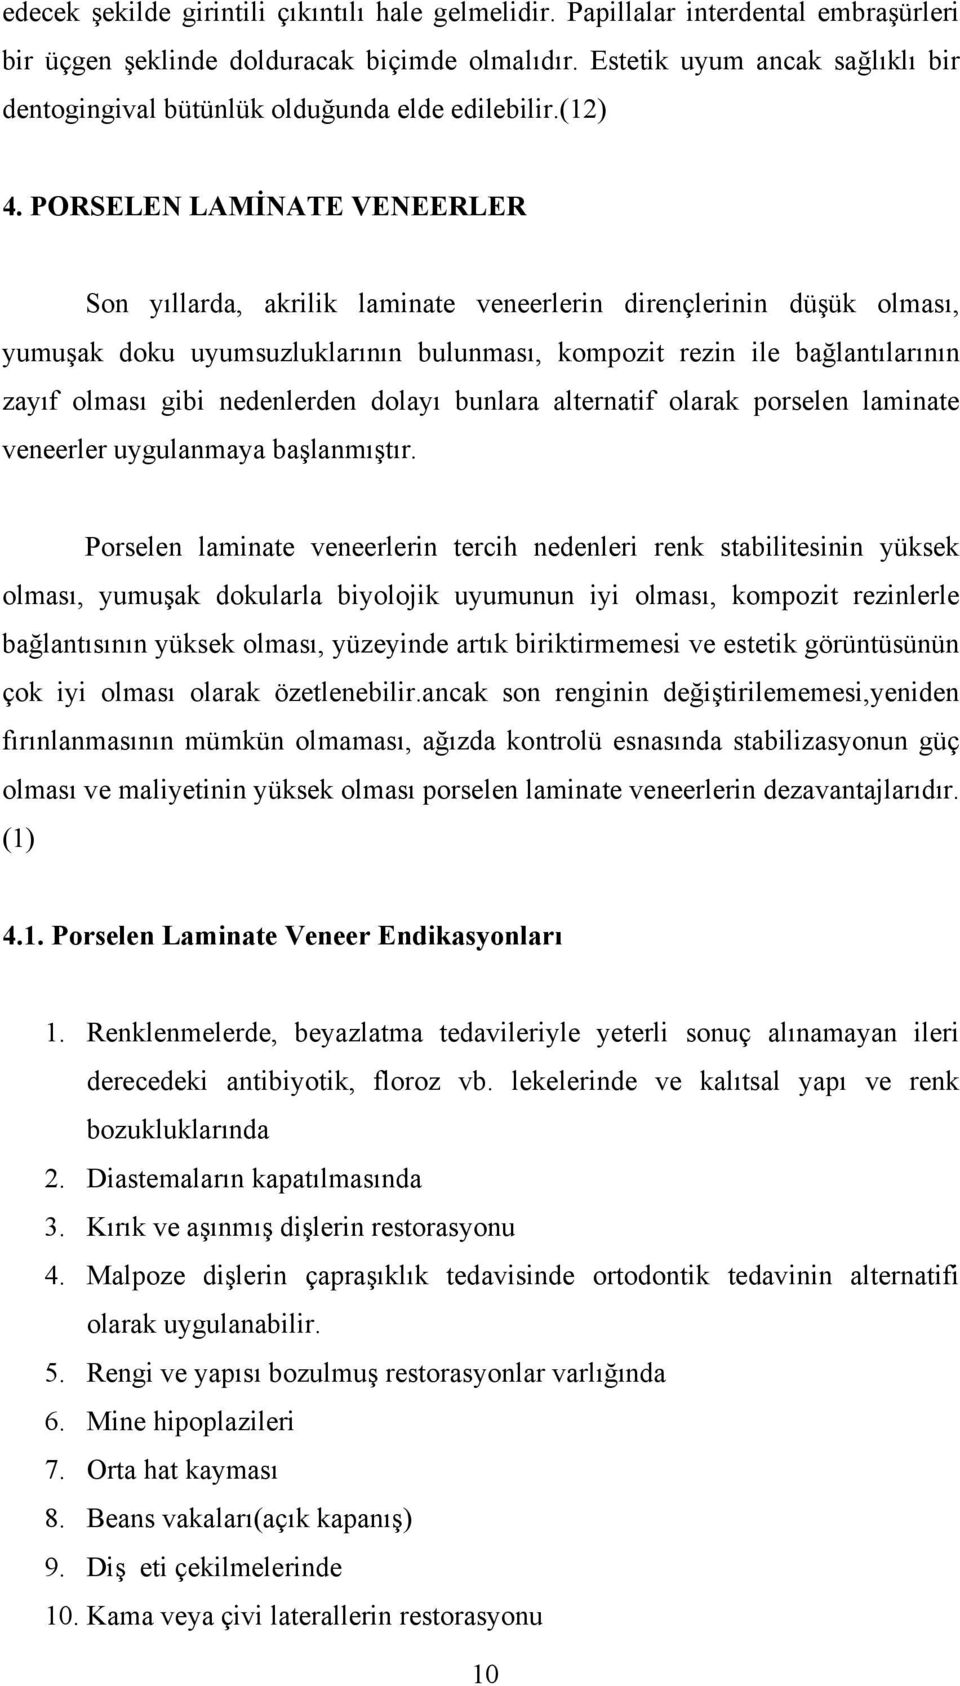 PORSELEN LAMİNATE VENEER RESTORASYONLAR - PDF Ücretsiz indirin